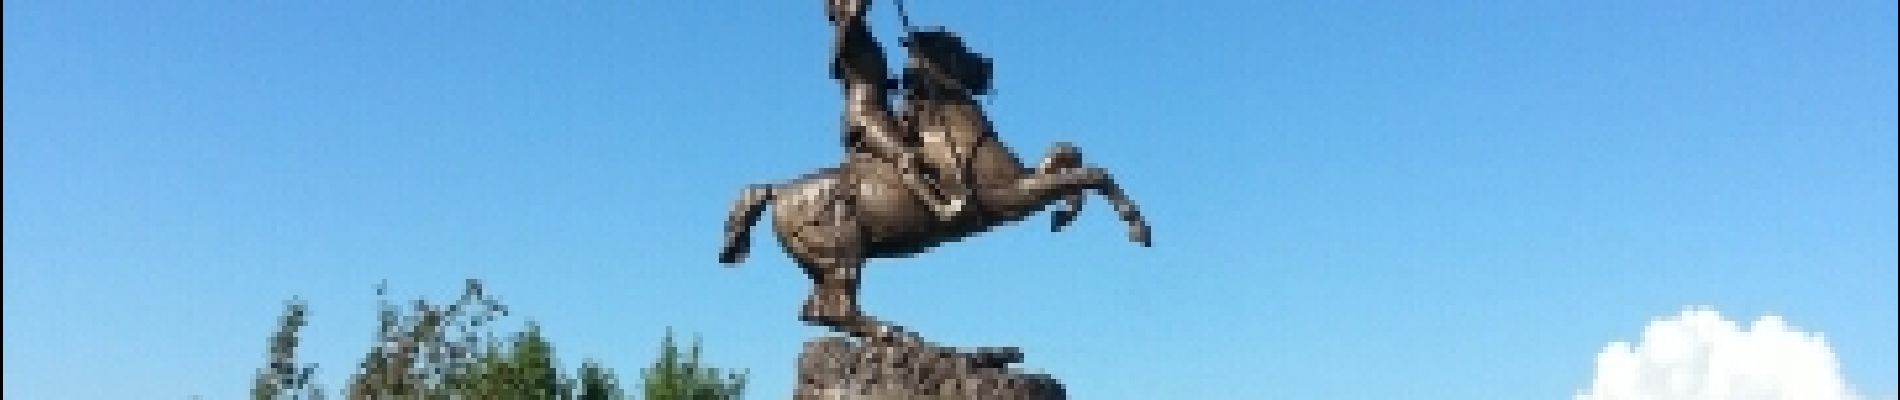 Point d'intérêt Lepuix - statue de jeanne d arc - Photo